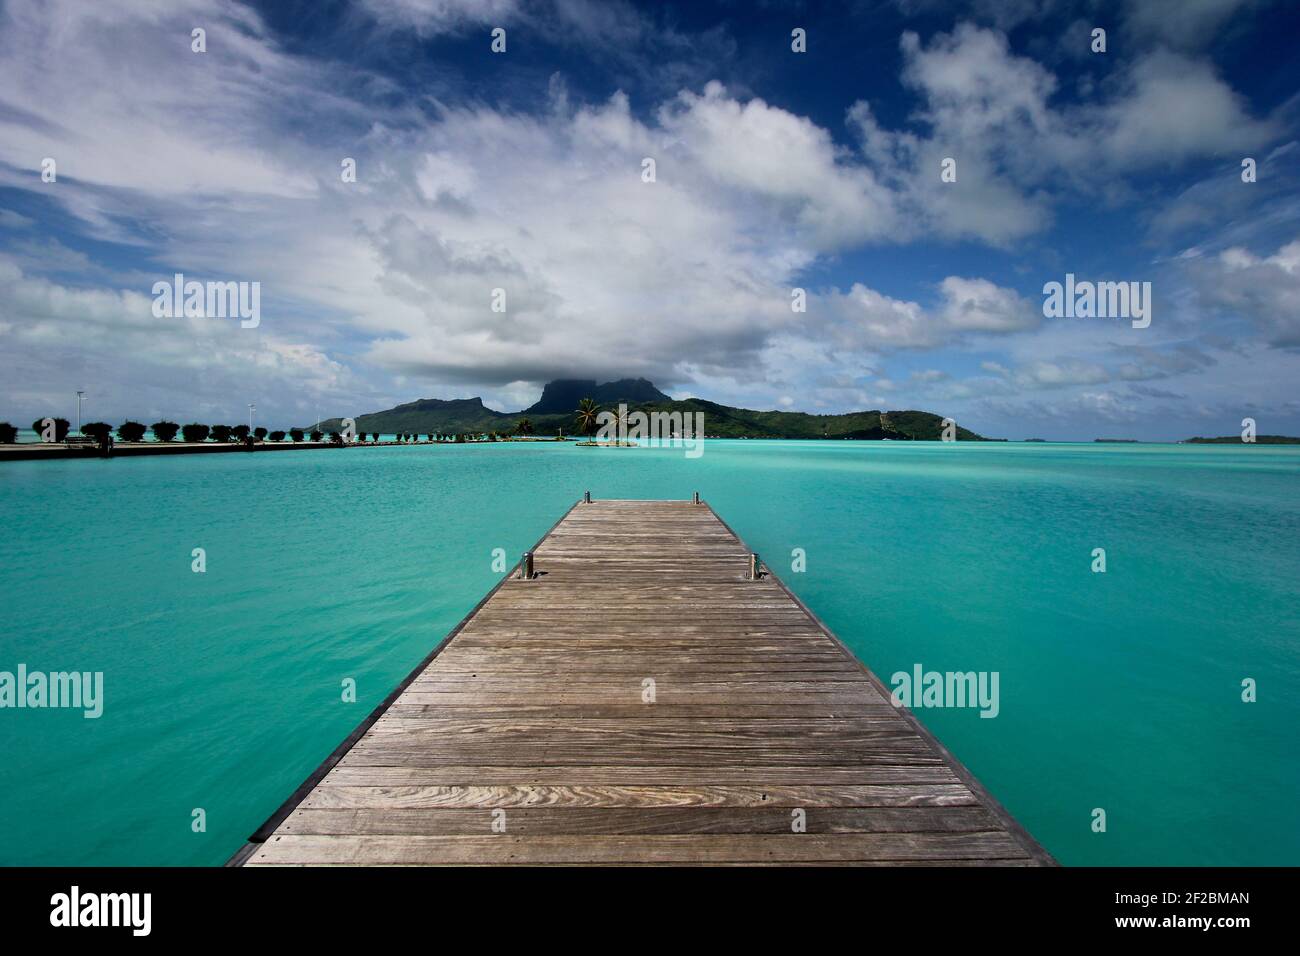 Amarrez-vous dans des eaux turquoise claires sur Bora Bora, Polynésie française Banque D'Images